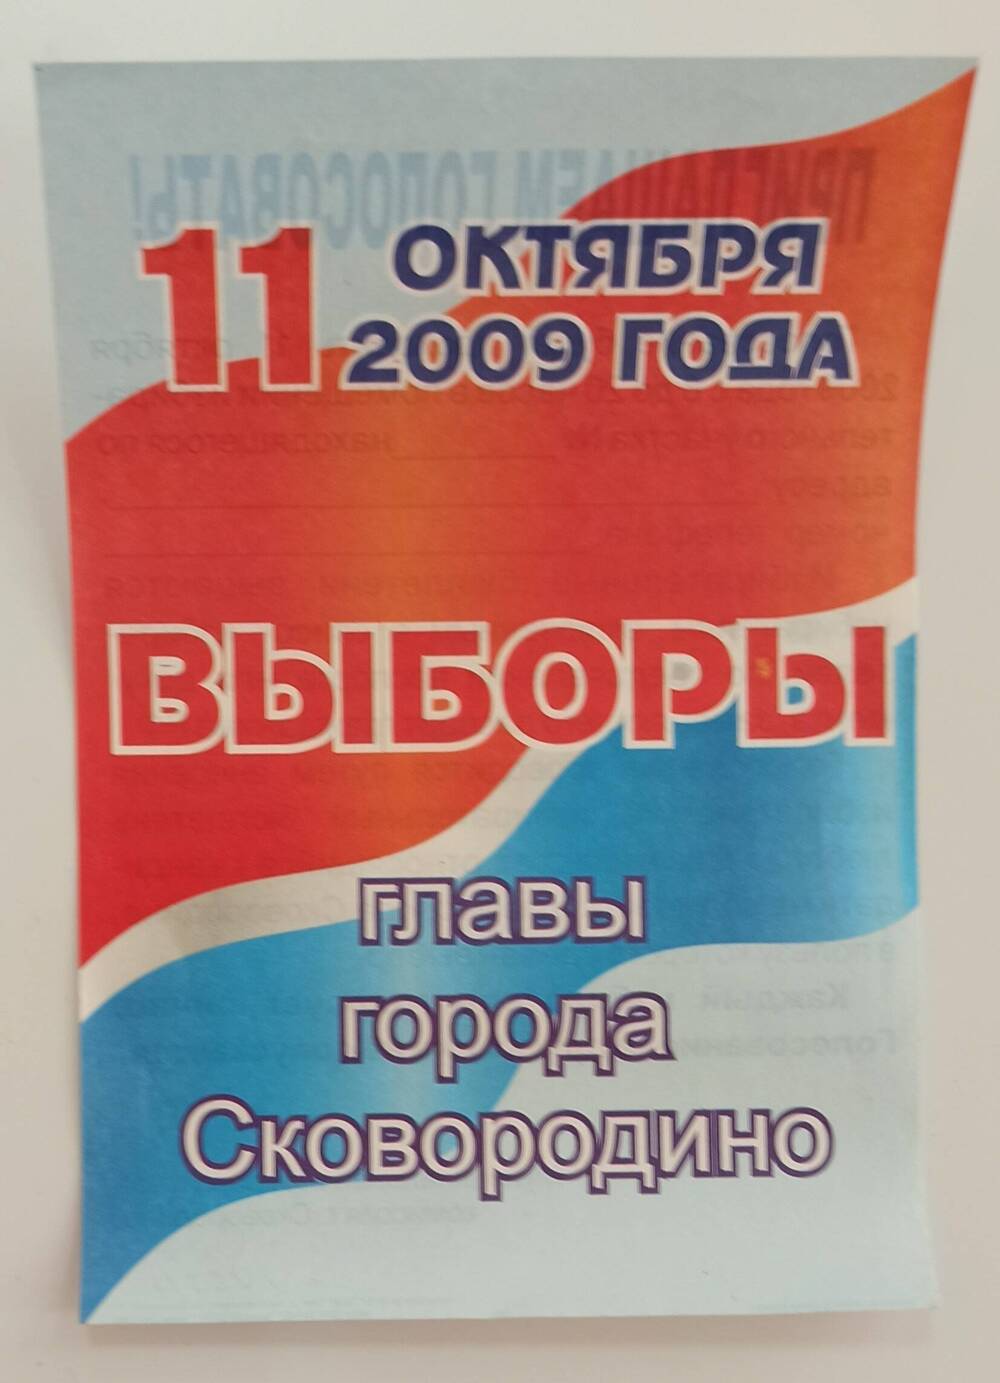 Приглашение на выборы Главы города Сковородино 11.10.2009 г.